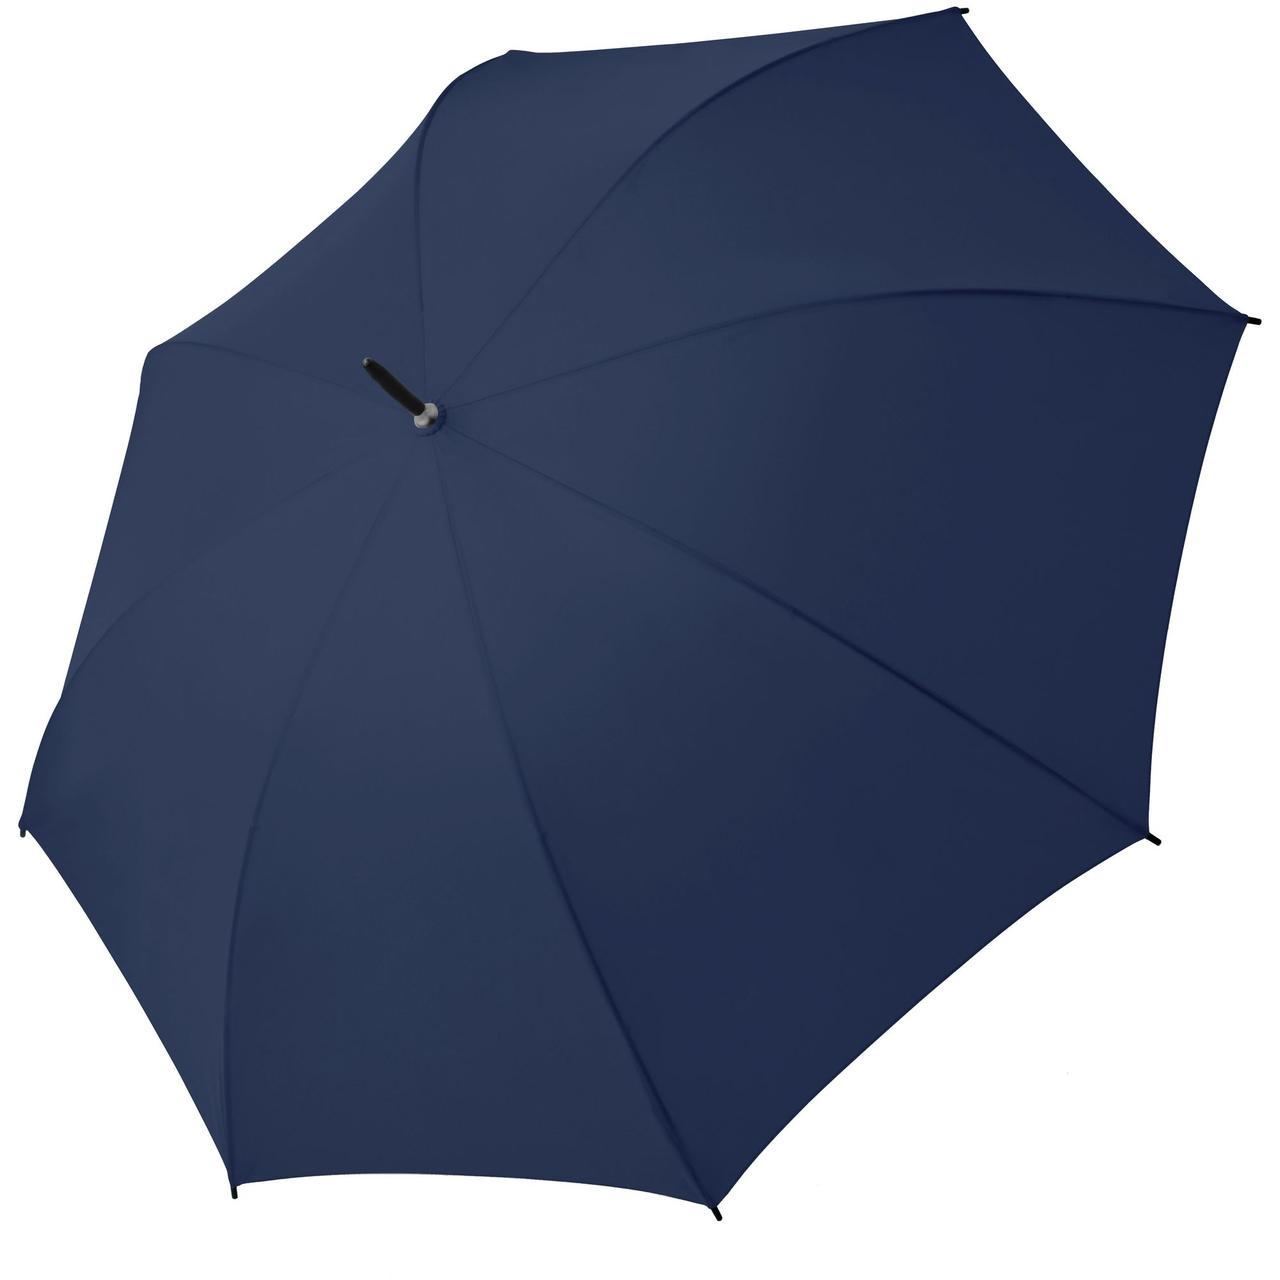 Зонт-трость Hit Golf AC, темно-синий (артикул 11849.40), фото 1